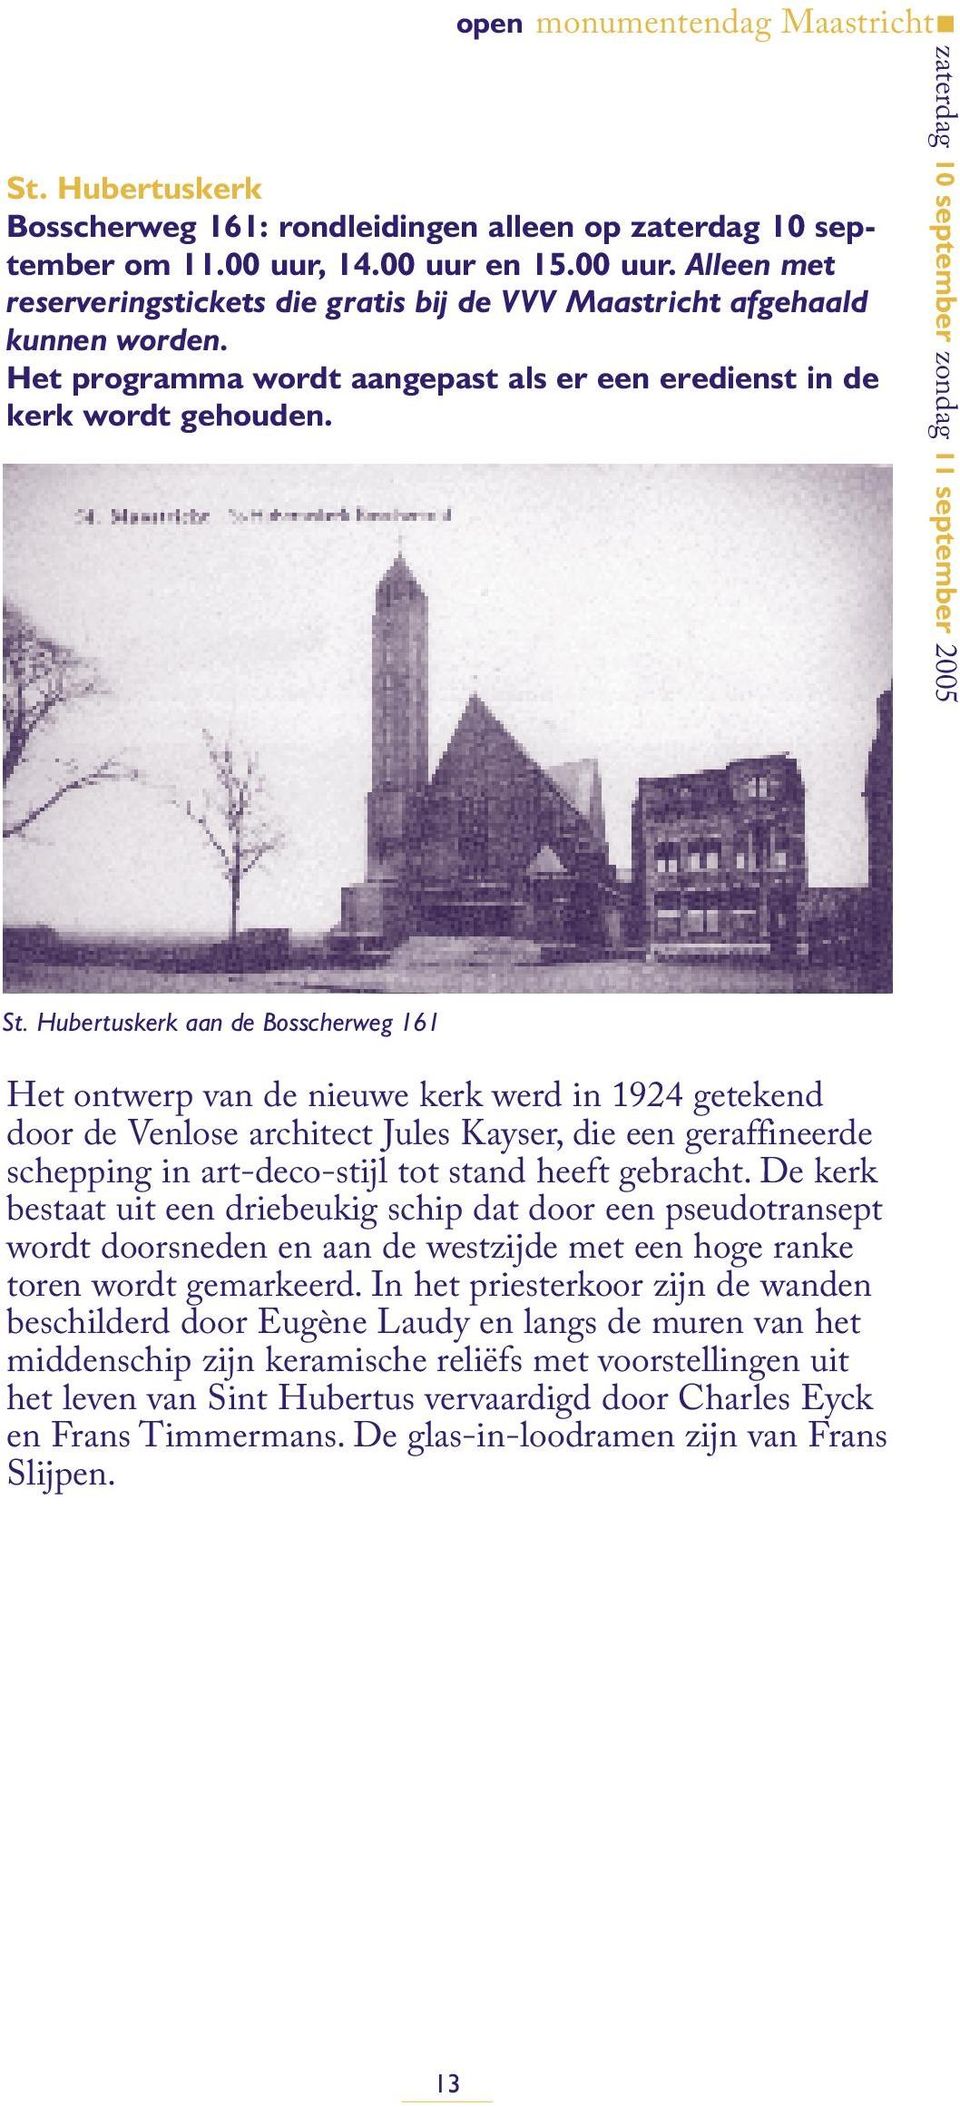 Hubertuskerk aan de Bosscherweg 161 Het ontwerp van de nieuwe kerk werd in 1924 getekend door de Venlose architect Jules Kayser, die een geraffineerde schepping in art-deco-stijl tot stand heeft